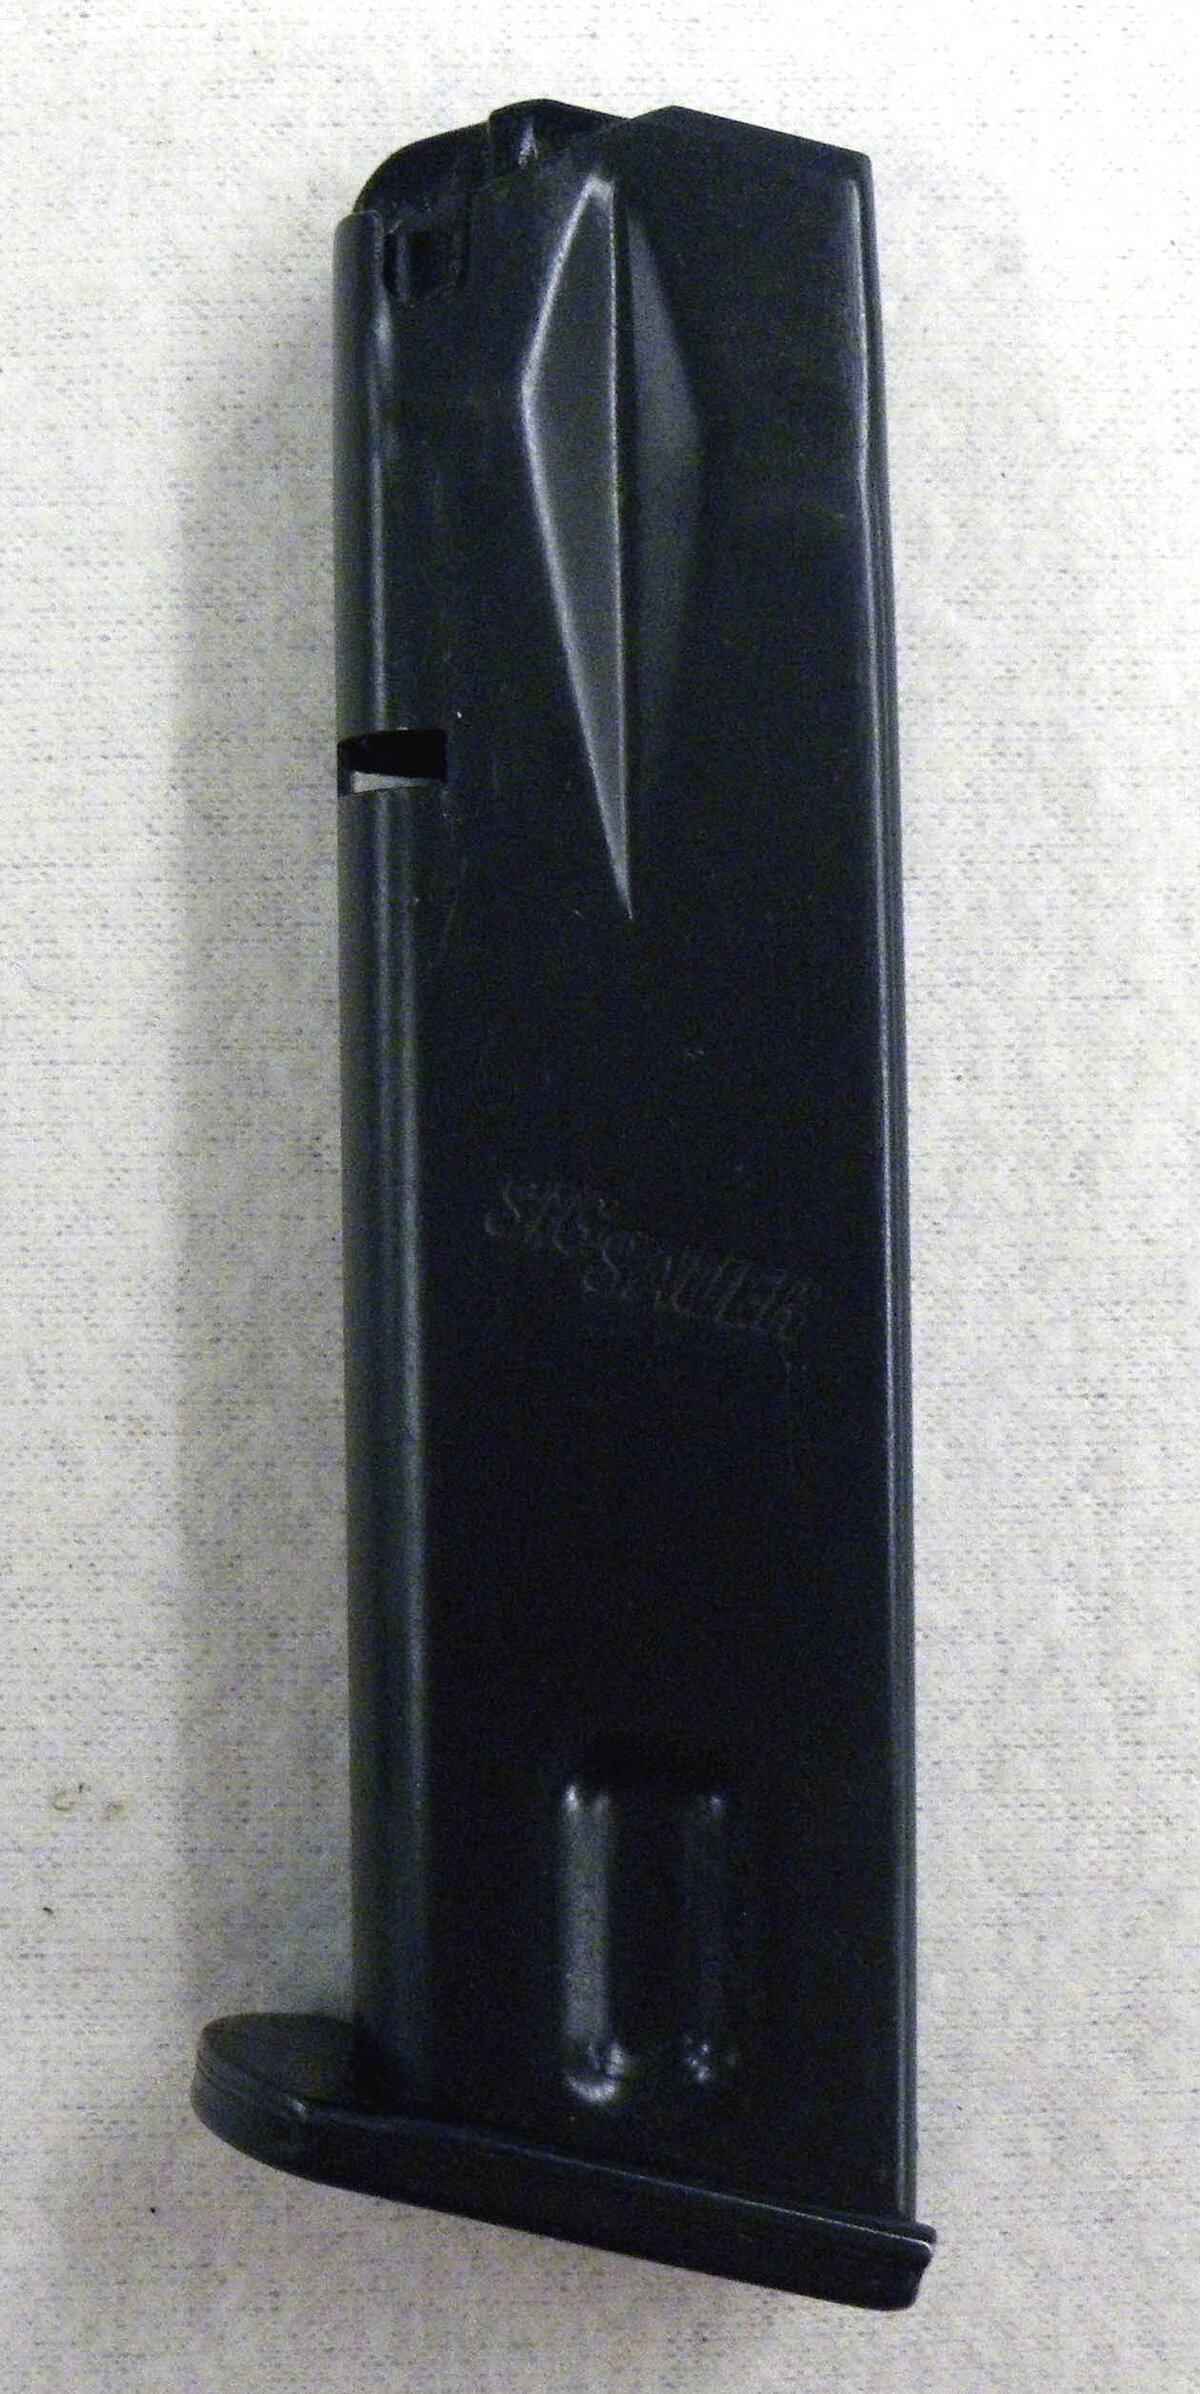 Magazin SigSauer P226 9mm Luger - Original